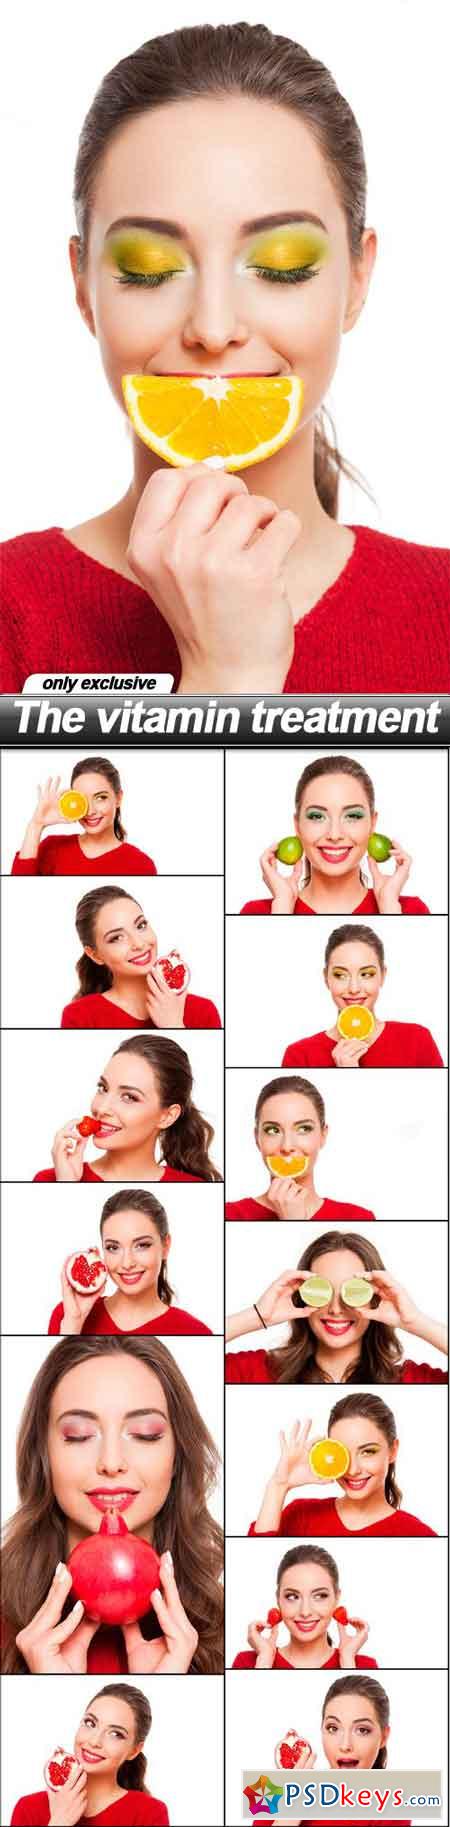 The vitamin treatment - 14 UHQ JPEG